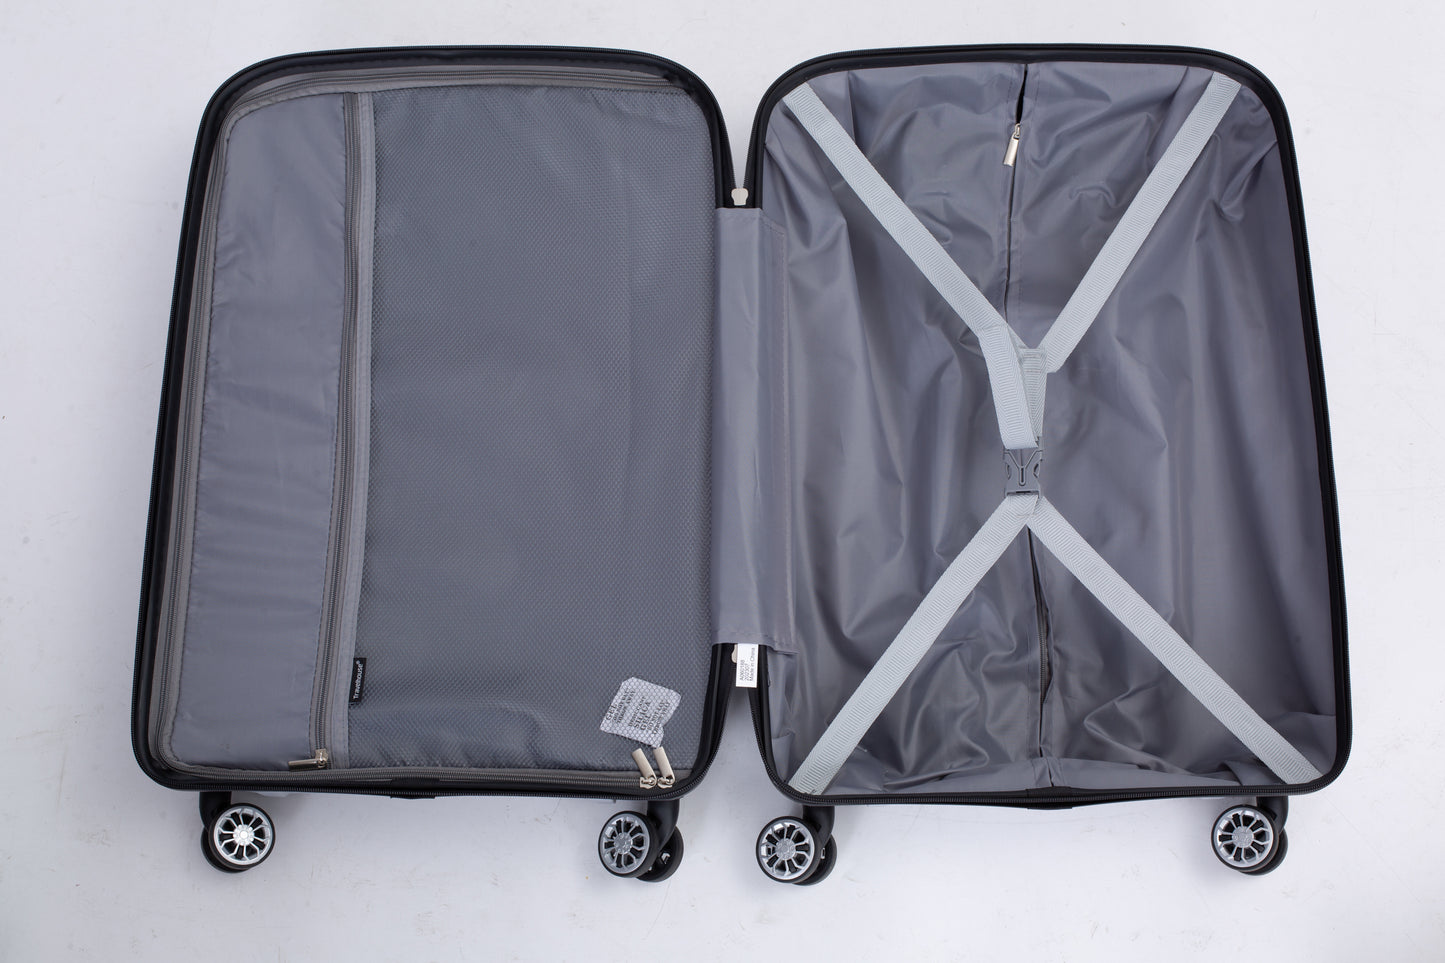 Valise rigide à roulettes en PP, ensemble de bagages léger et durable avec serrure TSA, 3 pièces (20/24/28), argent